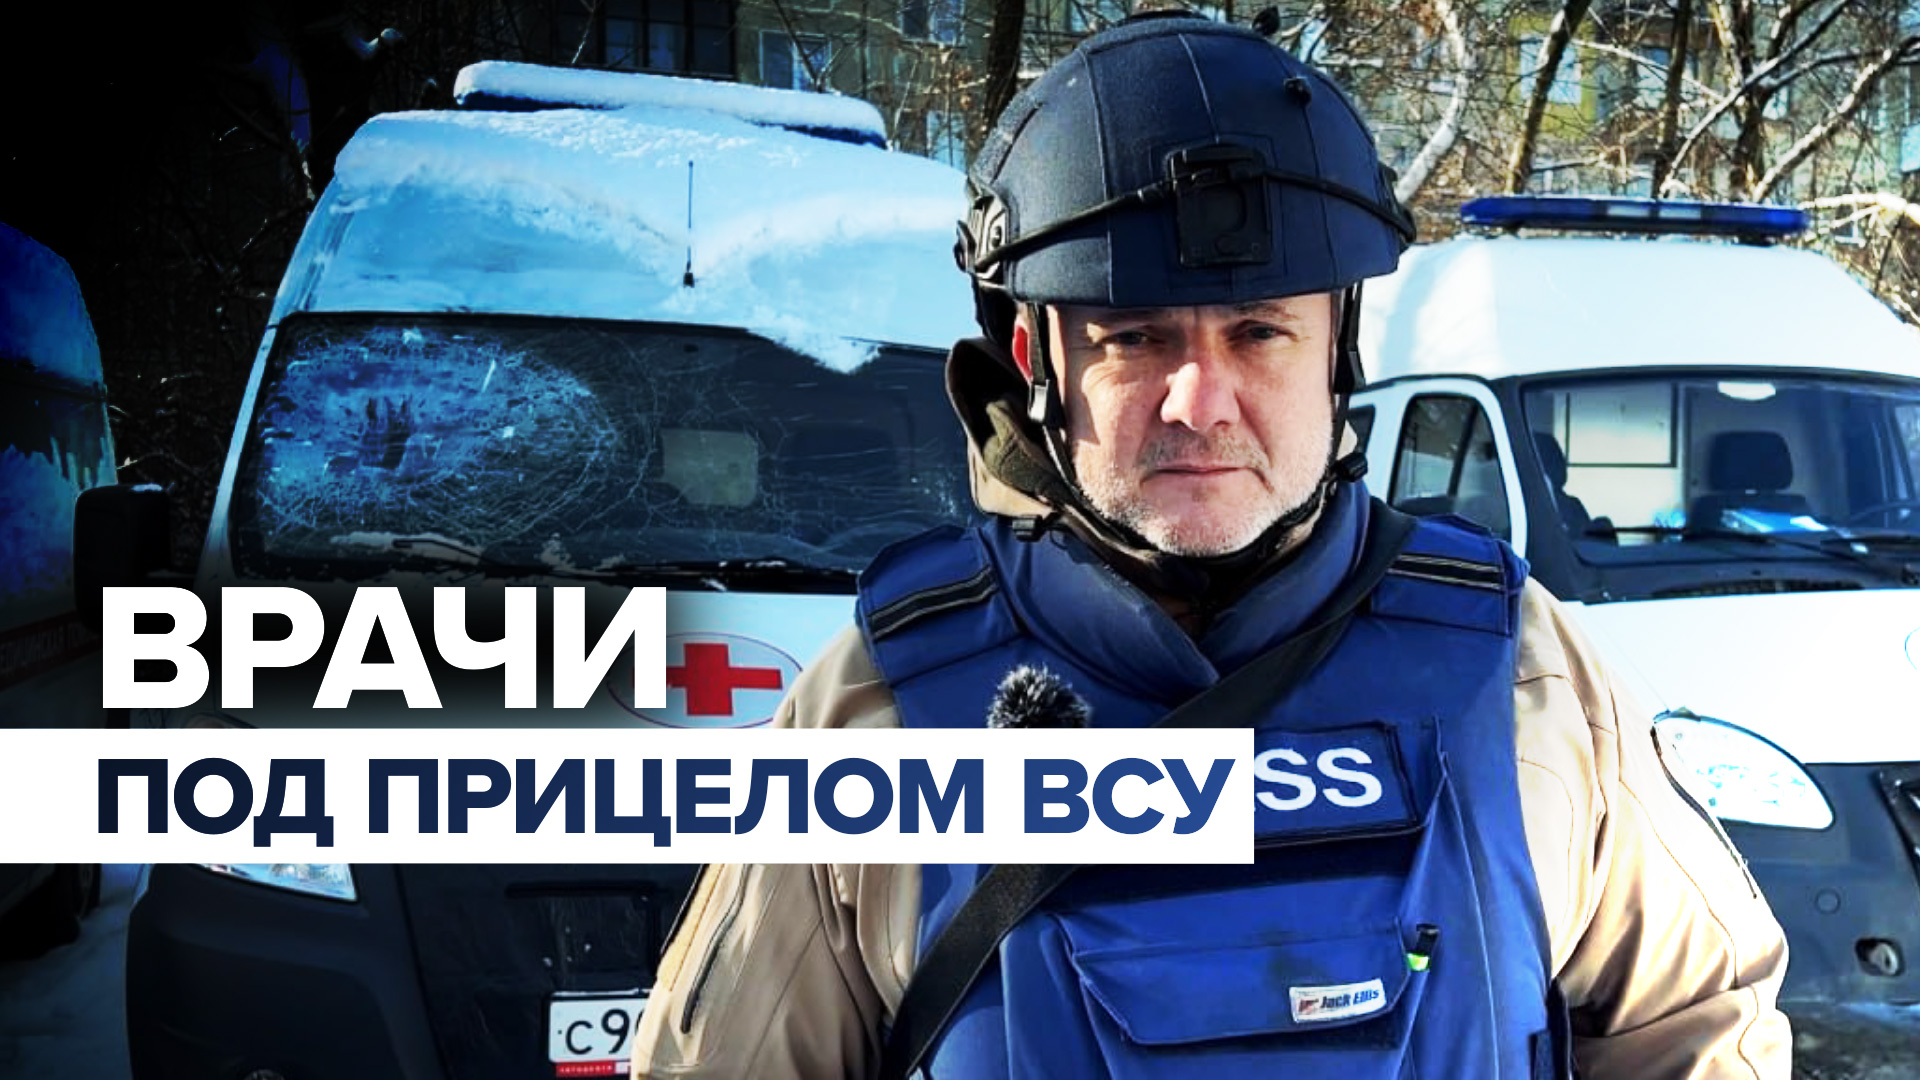 «Выезжая оказывать помощь, рискуют своей жизнью»: как медработники Донбасса стали мишенью для ВСУ